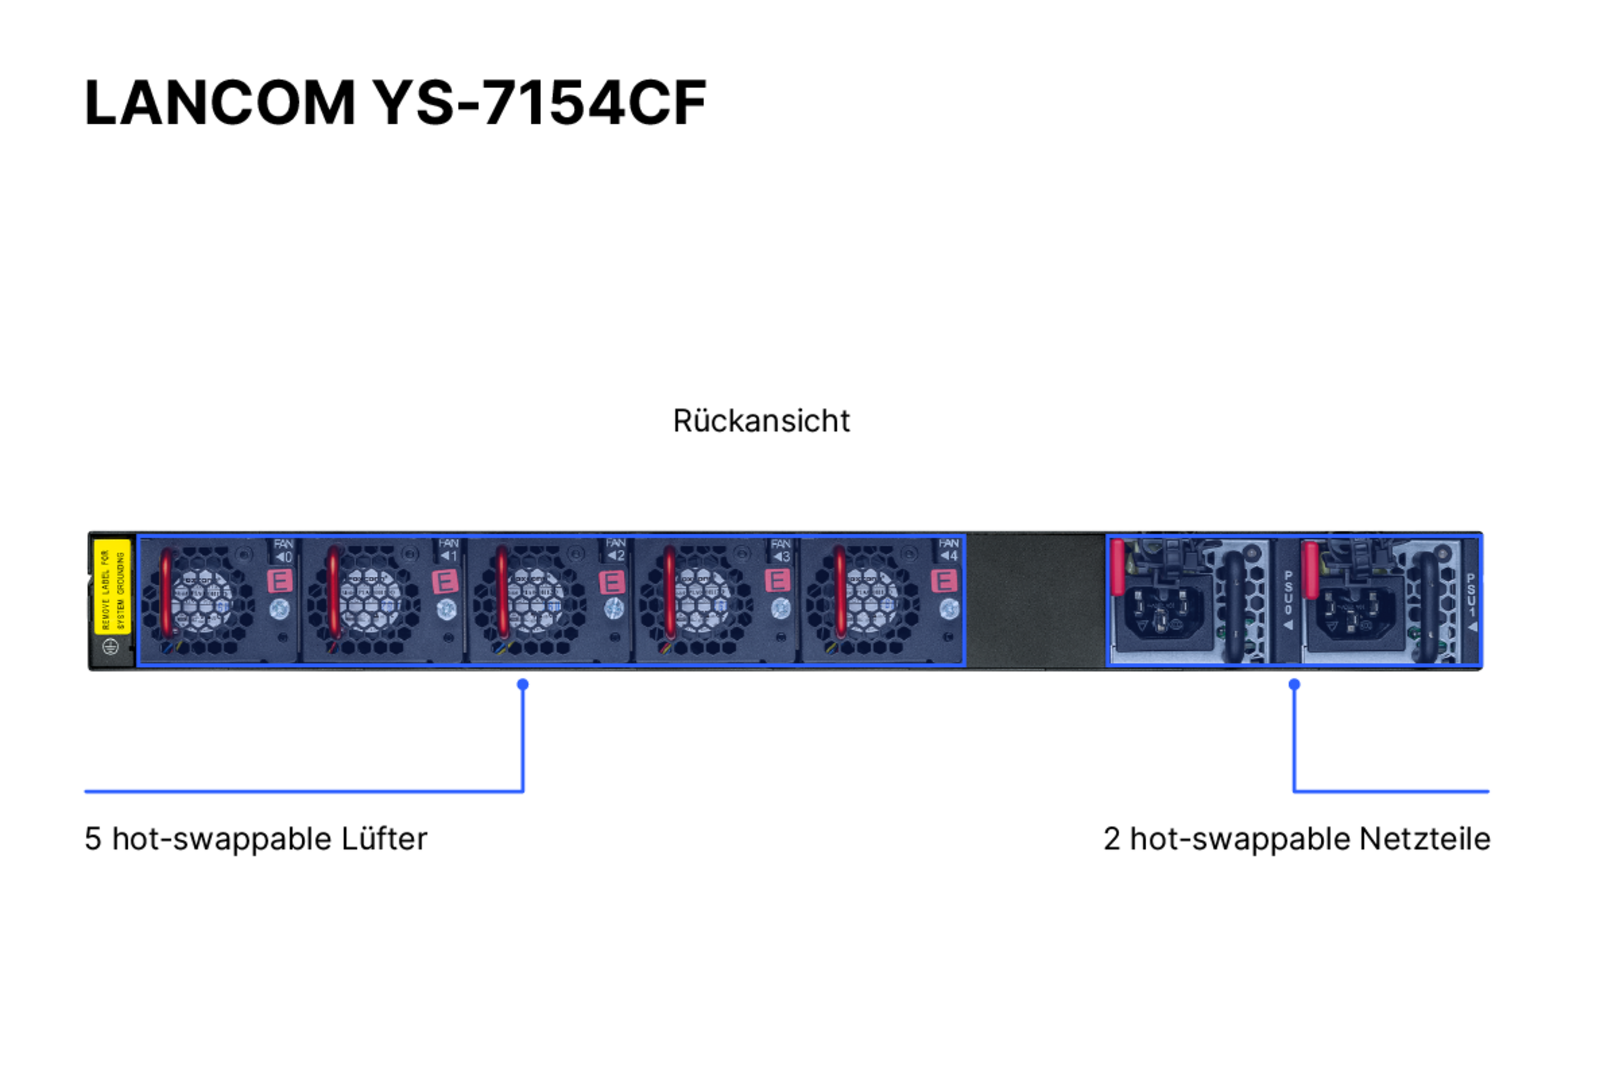 Produktfoto des LANCOM YS-7154CF mit Beschriftung der Portkonfigurationen auf der Rückseite